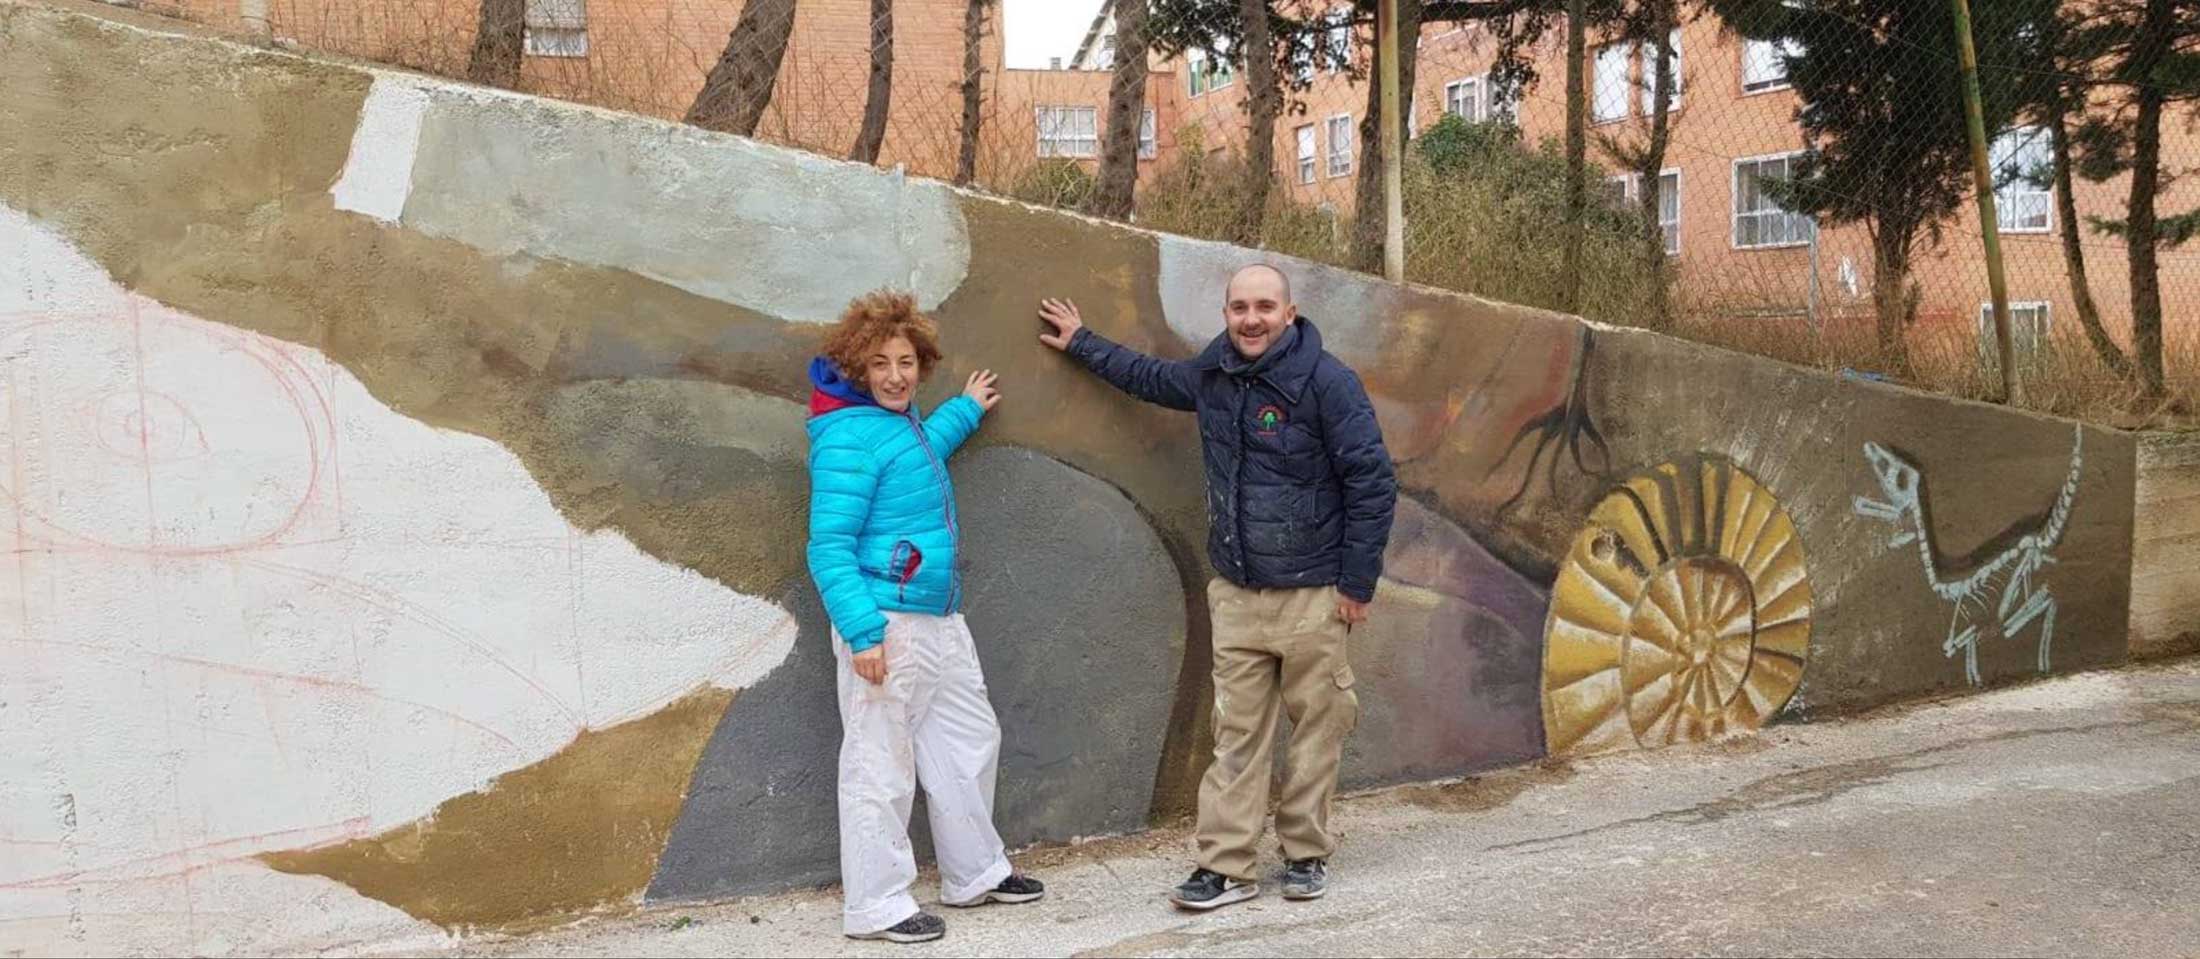 Mural-Las-Torres-1